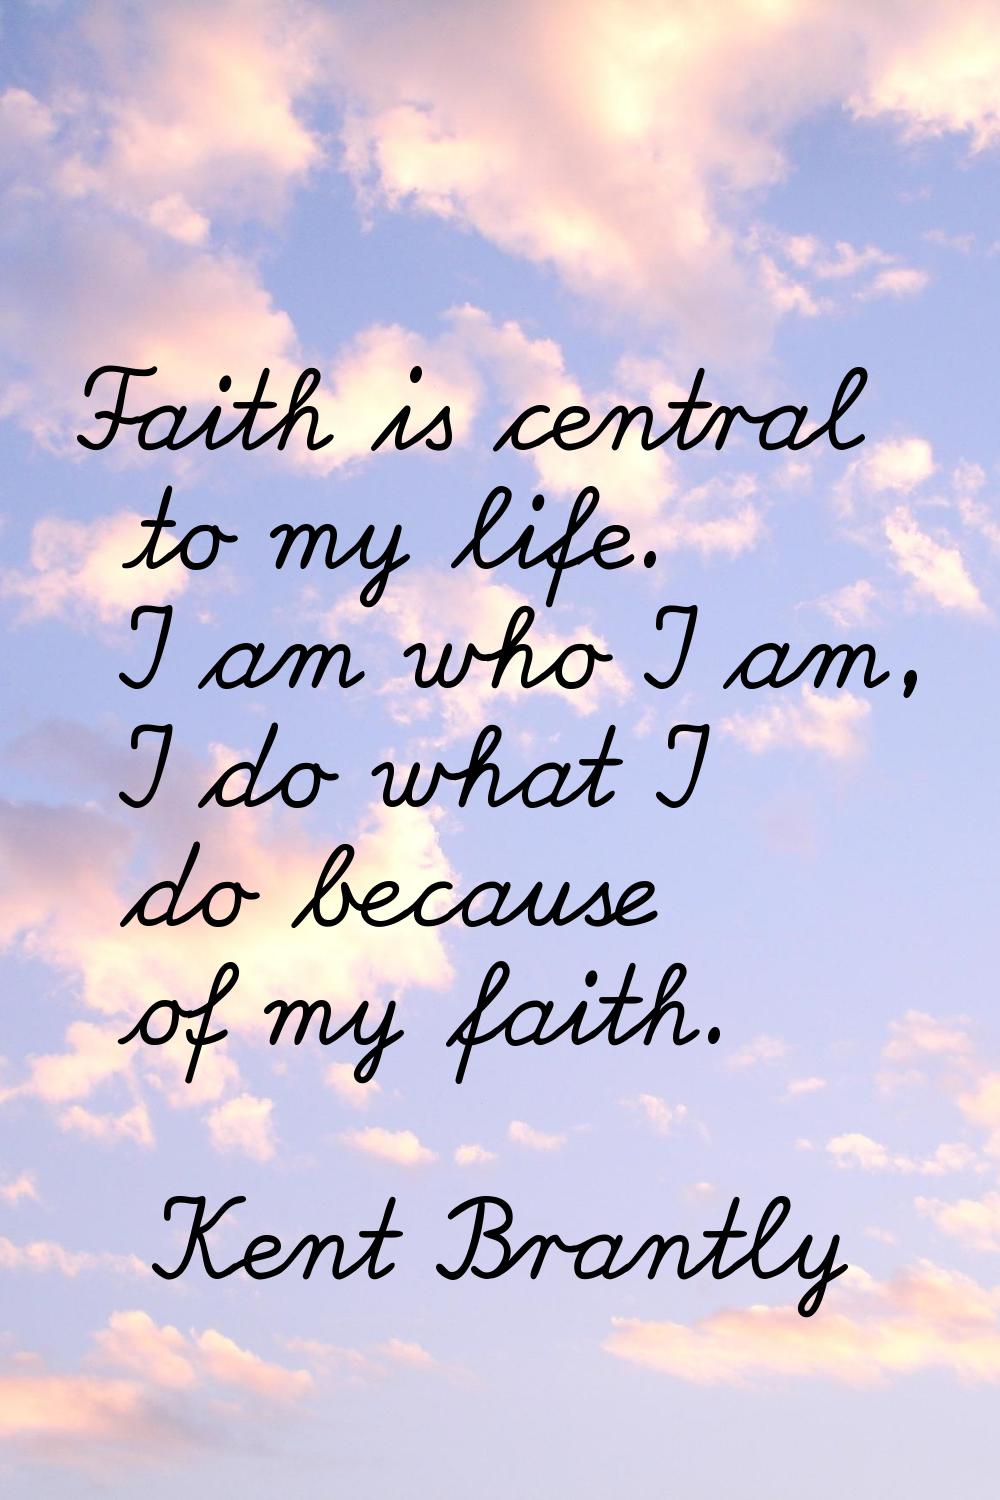 Faith is central to my life. I am who I am, I do what I do because of my faith.